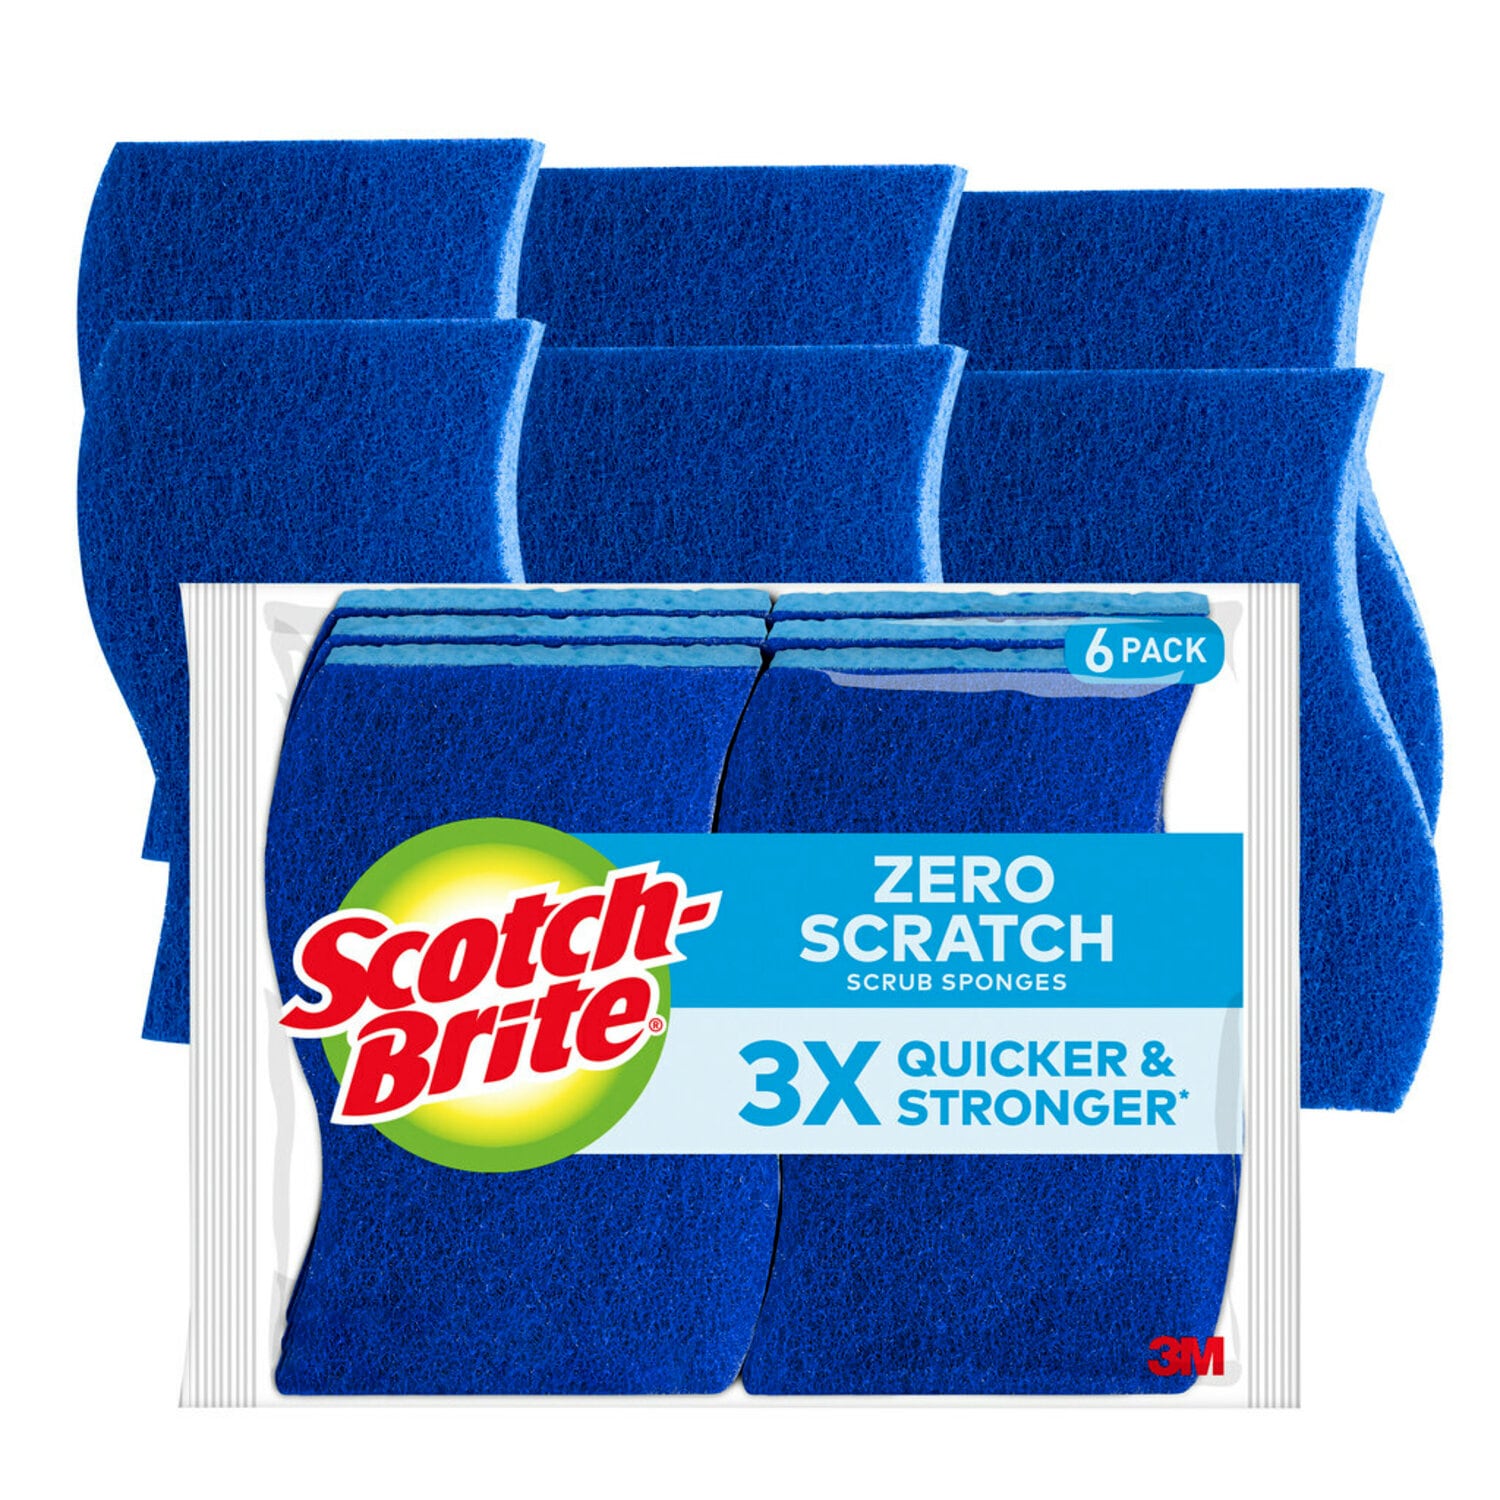 7100282600 - Scotch-Brite Zero Scratch Scrub Sponge 526-6, 4.4 in x 2.6 in x 0.7 in (111 mm x 66 mm x 17 mm), 6/6